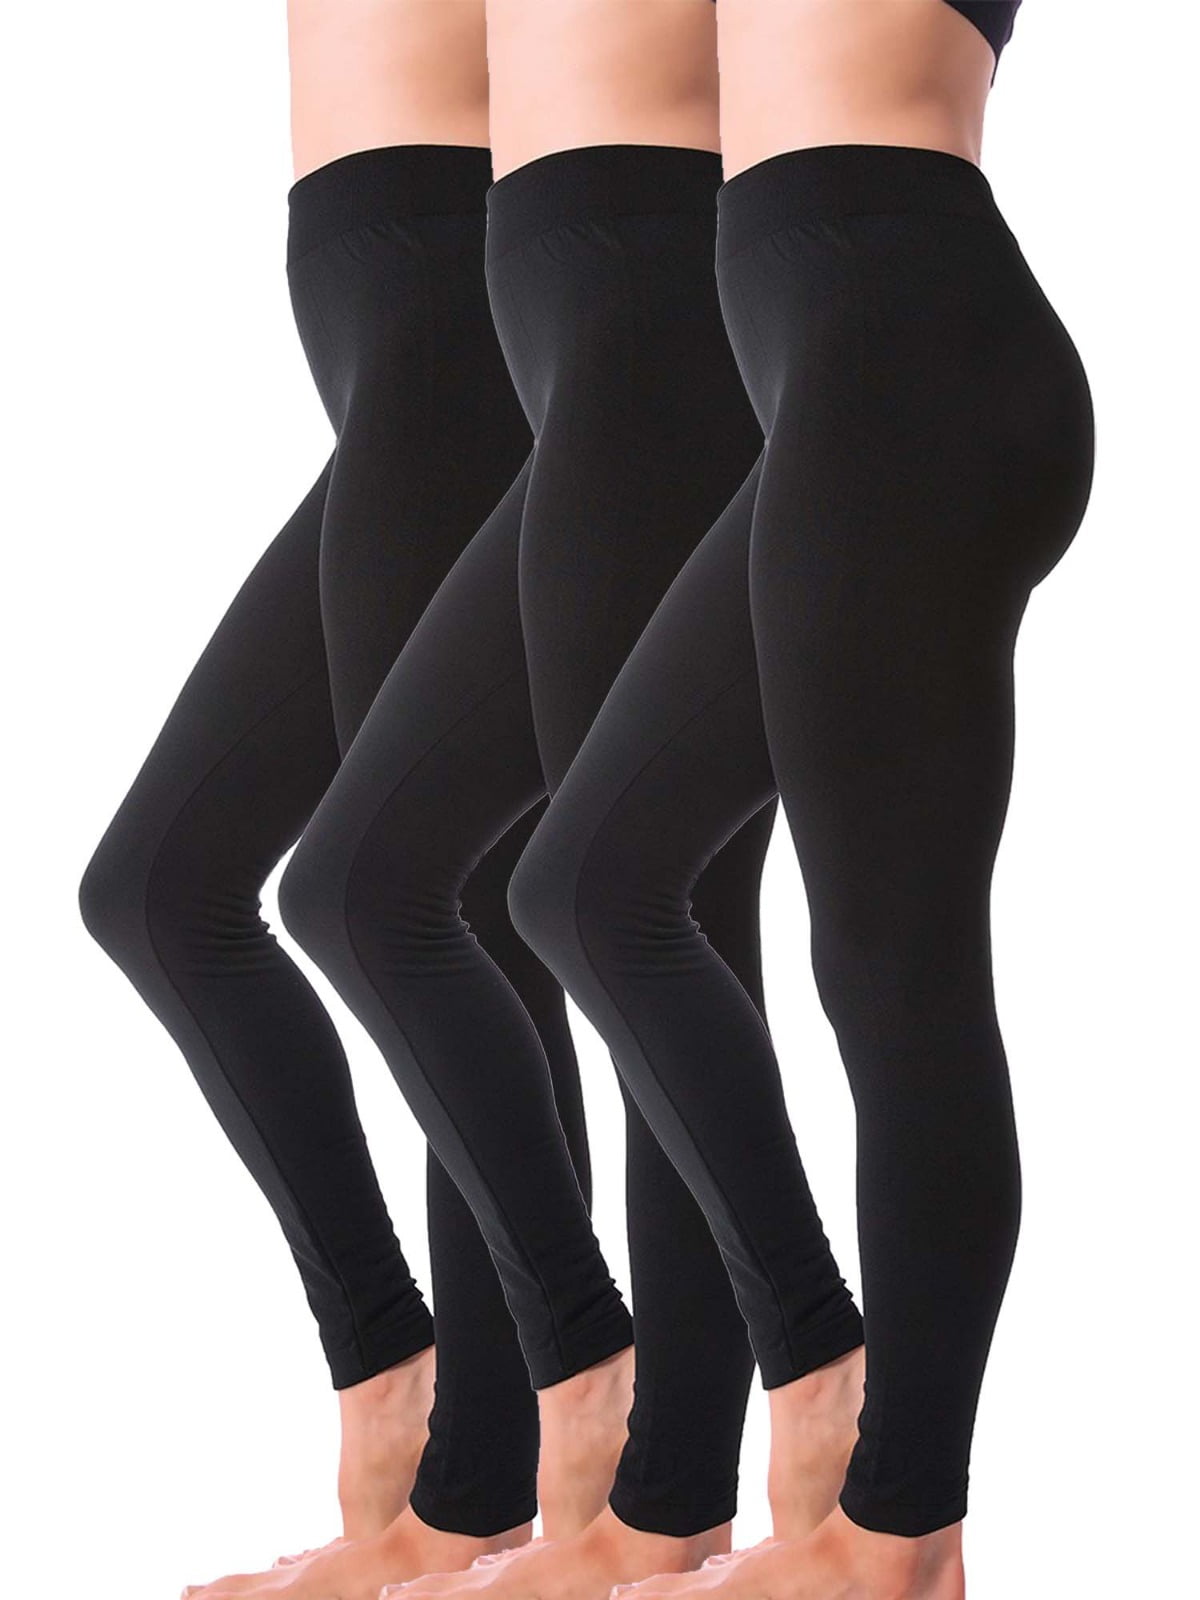 Htwon Winter Leggings for Women Fleece Lined Leggings Thermal Warm  Pants(Black, XL)